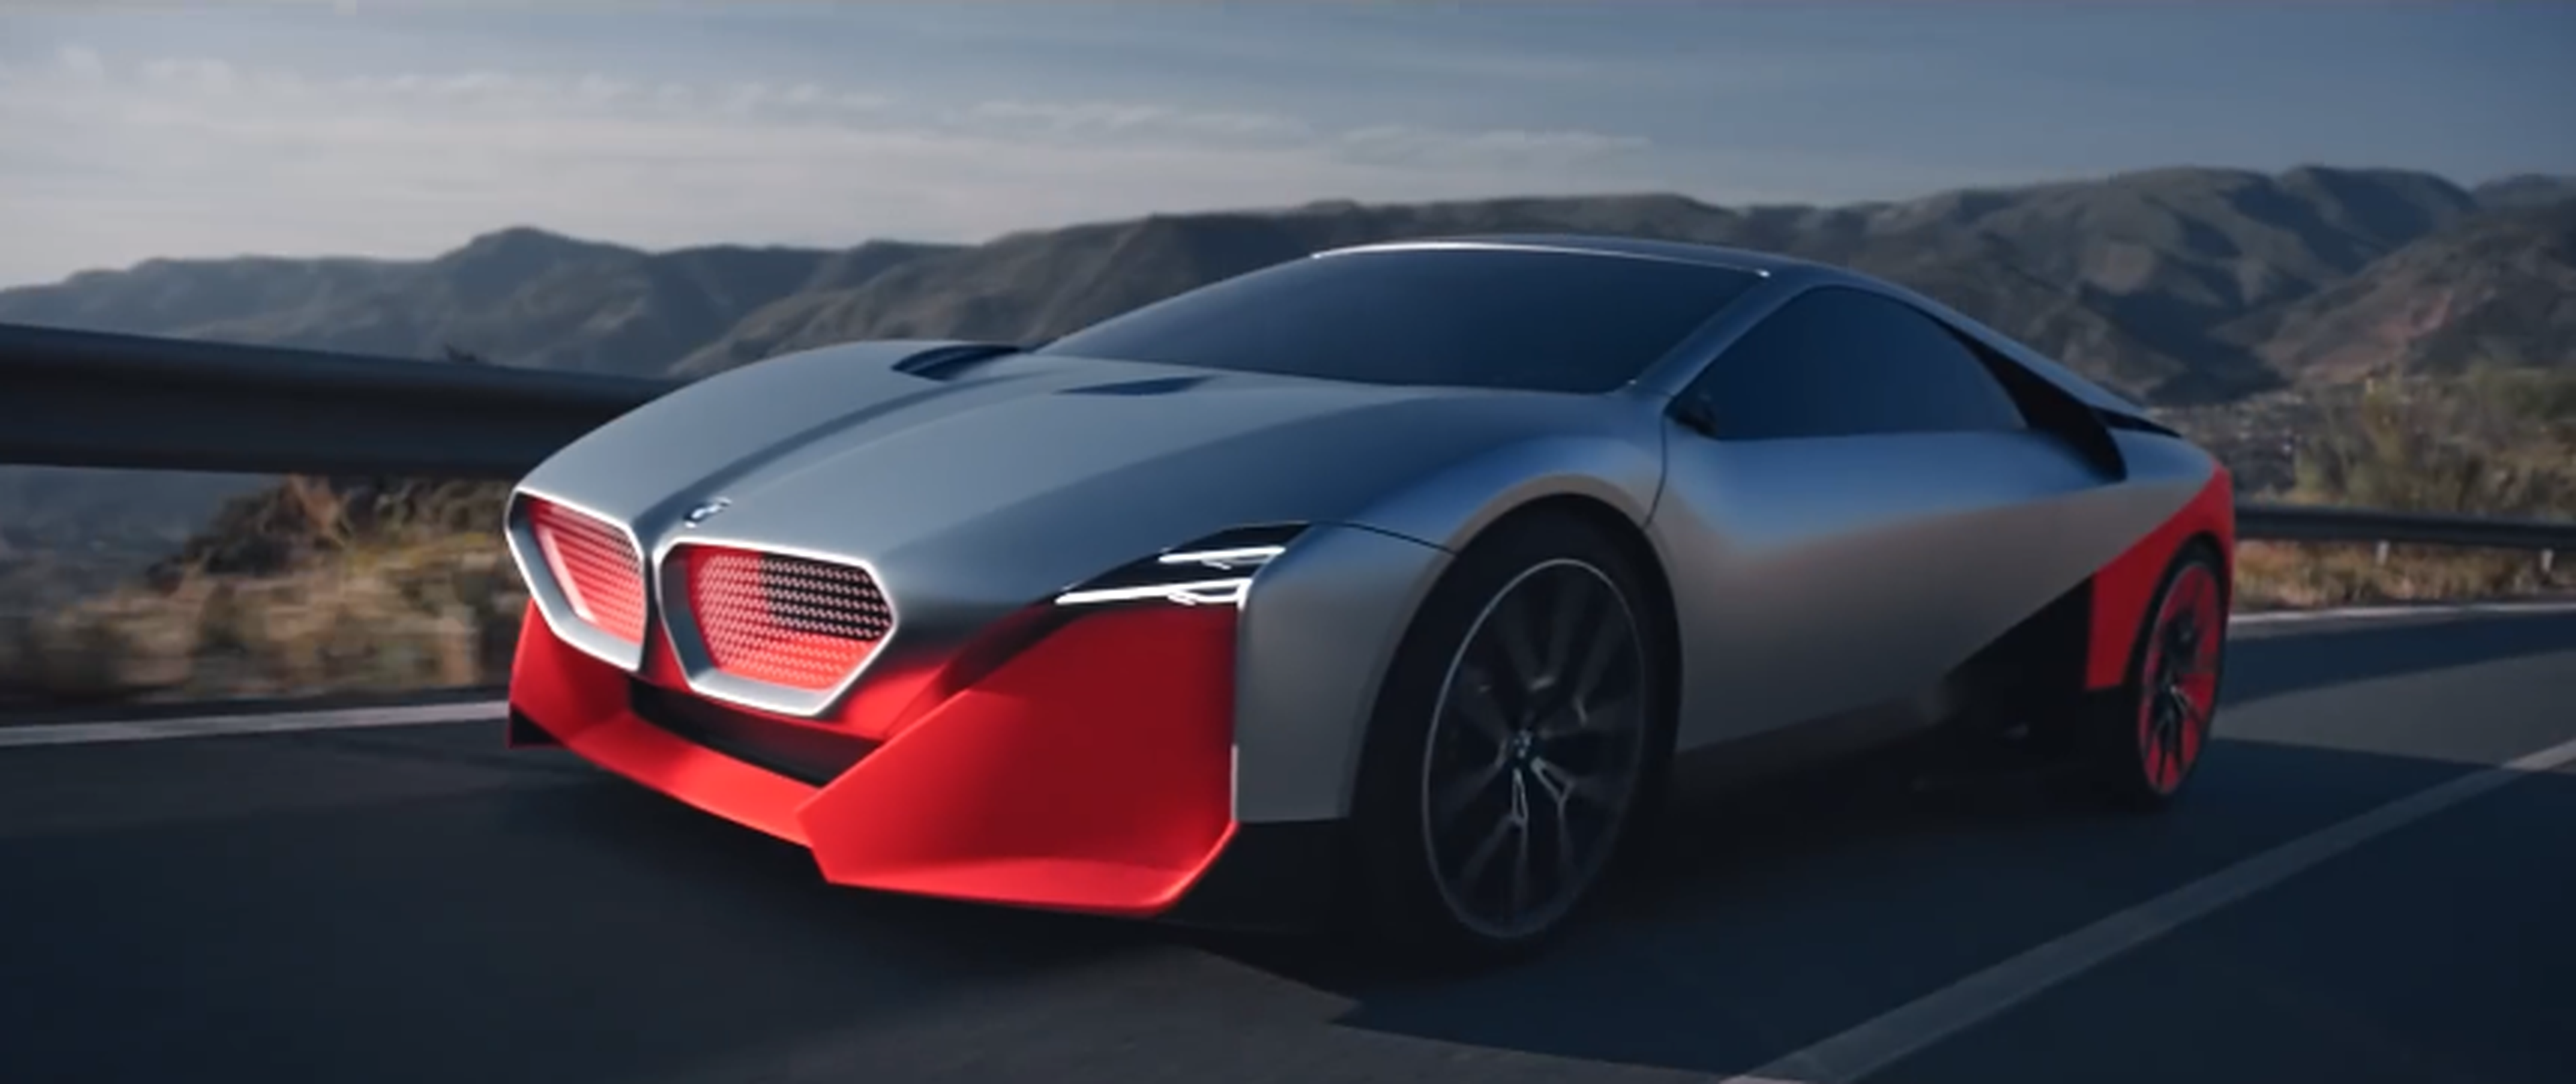 VÍDEO: Así es el BMW Vision M NEXT, el deportivo del futuro